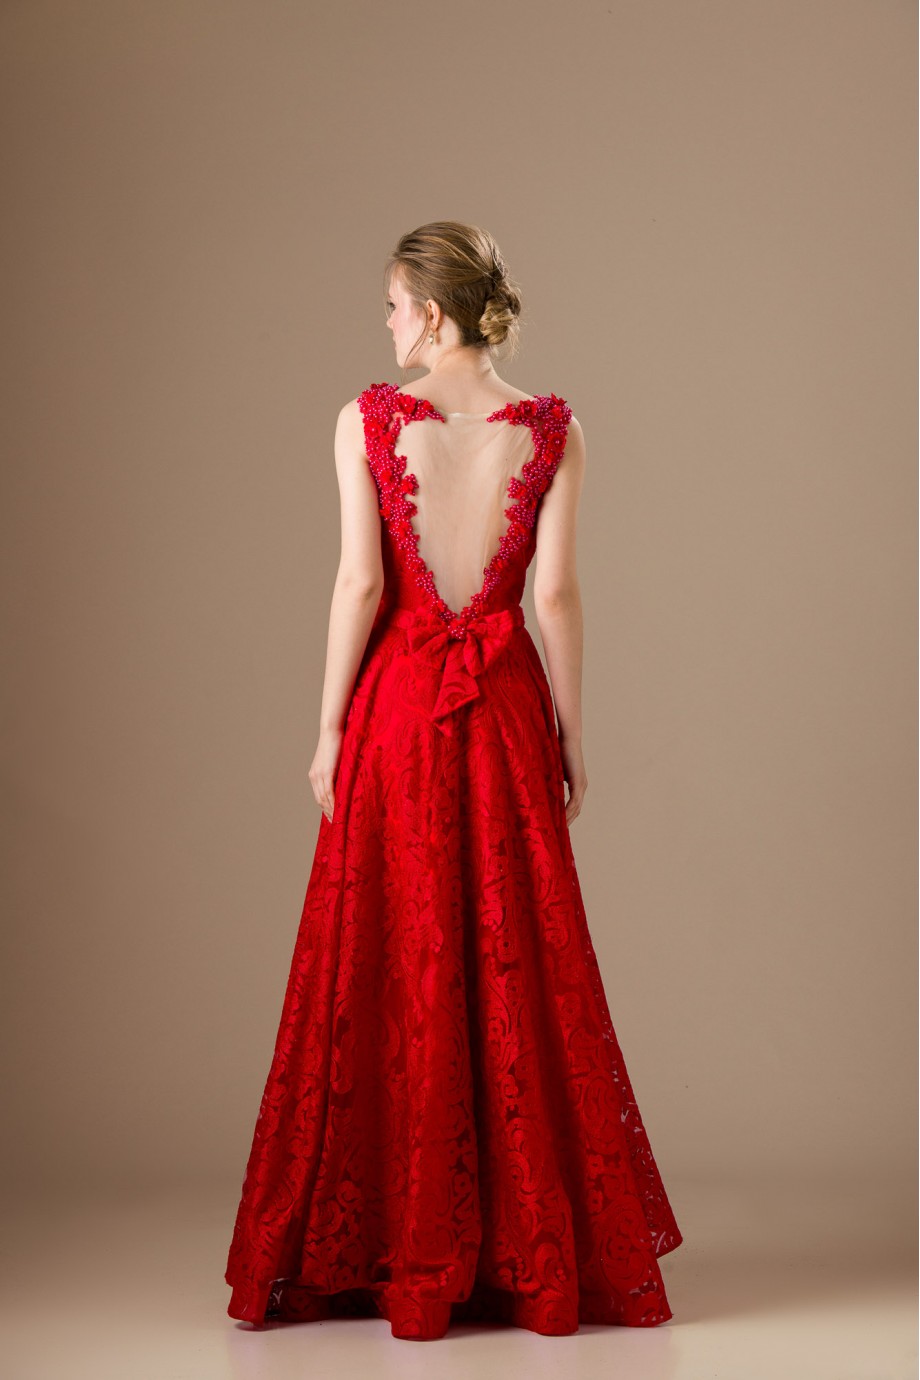 Μακρύ κόκκινο εντυπωσιακό φόρεμα